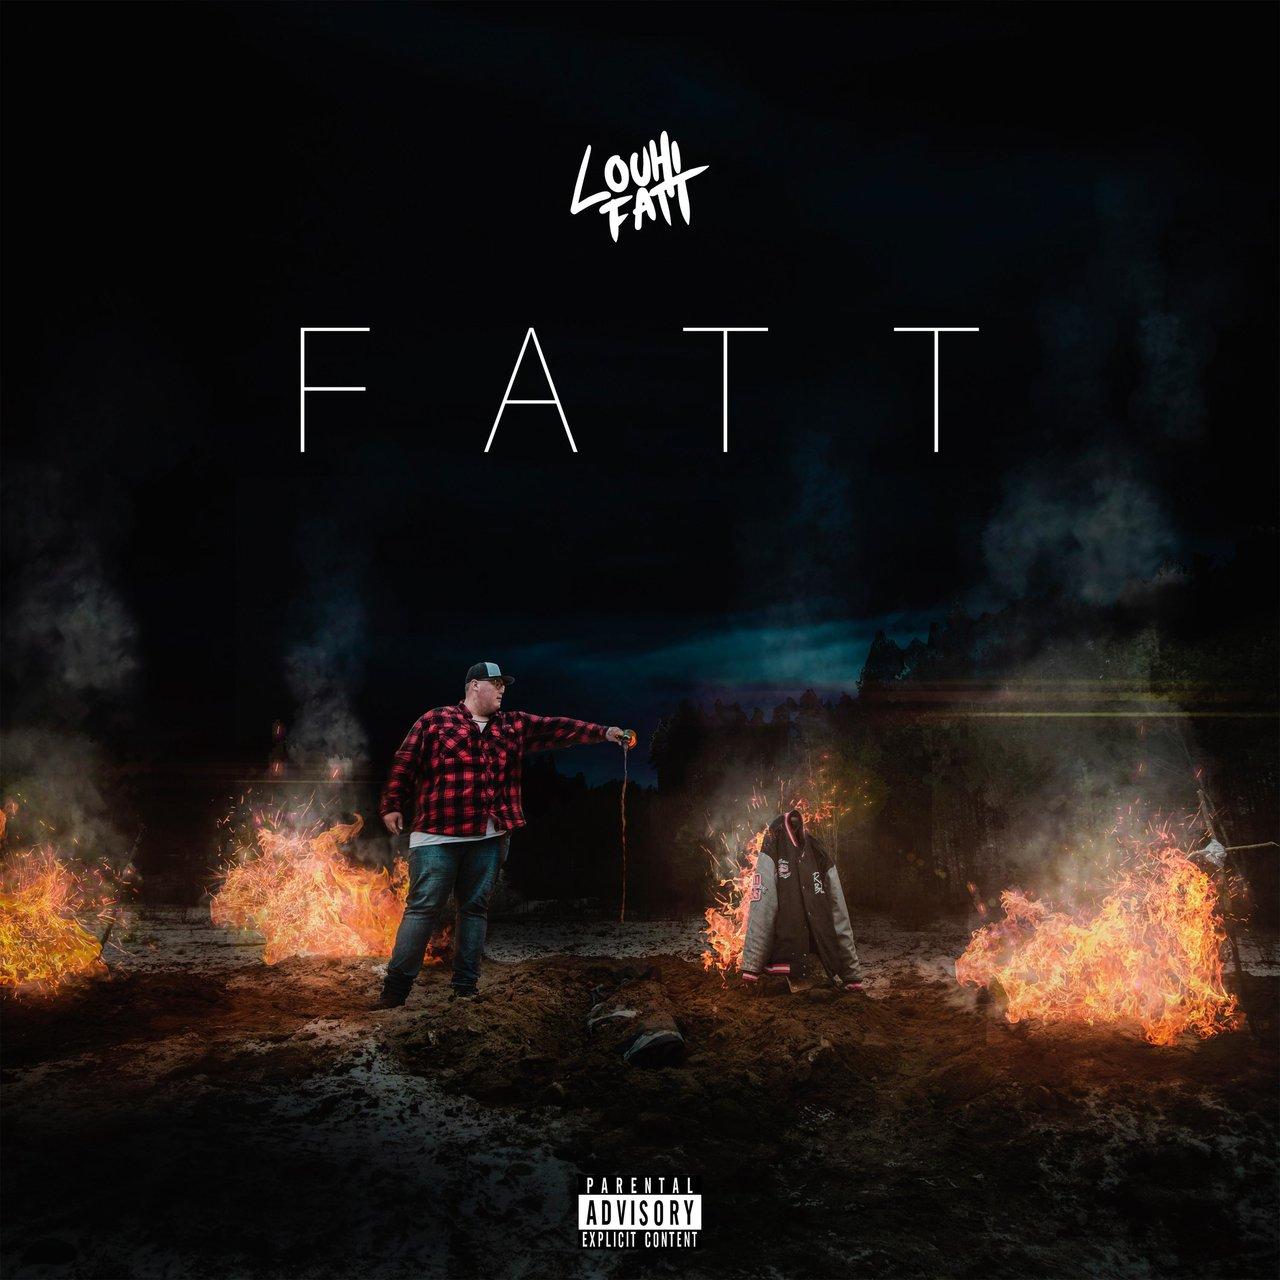 Louhi Fatt – Fatt